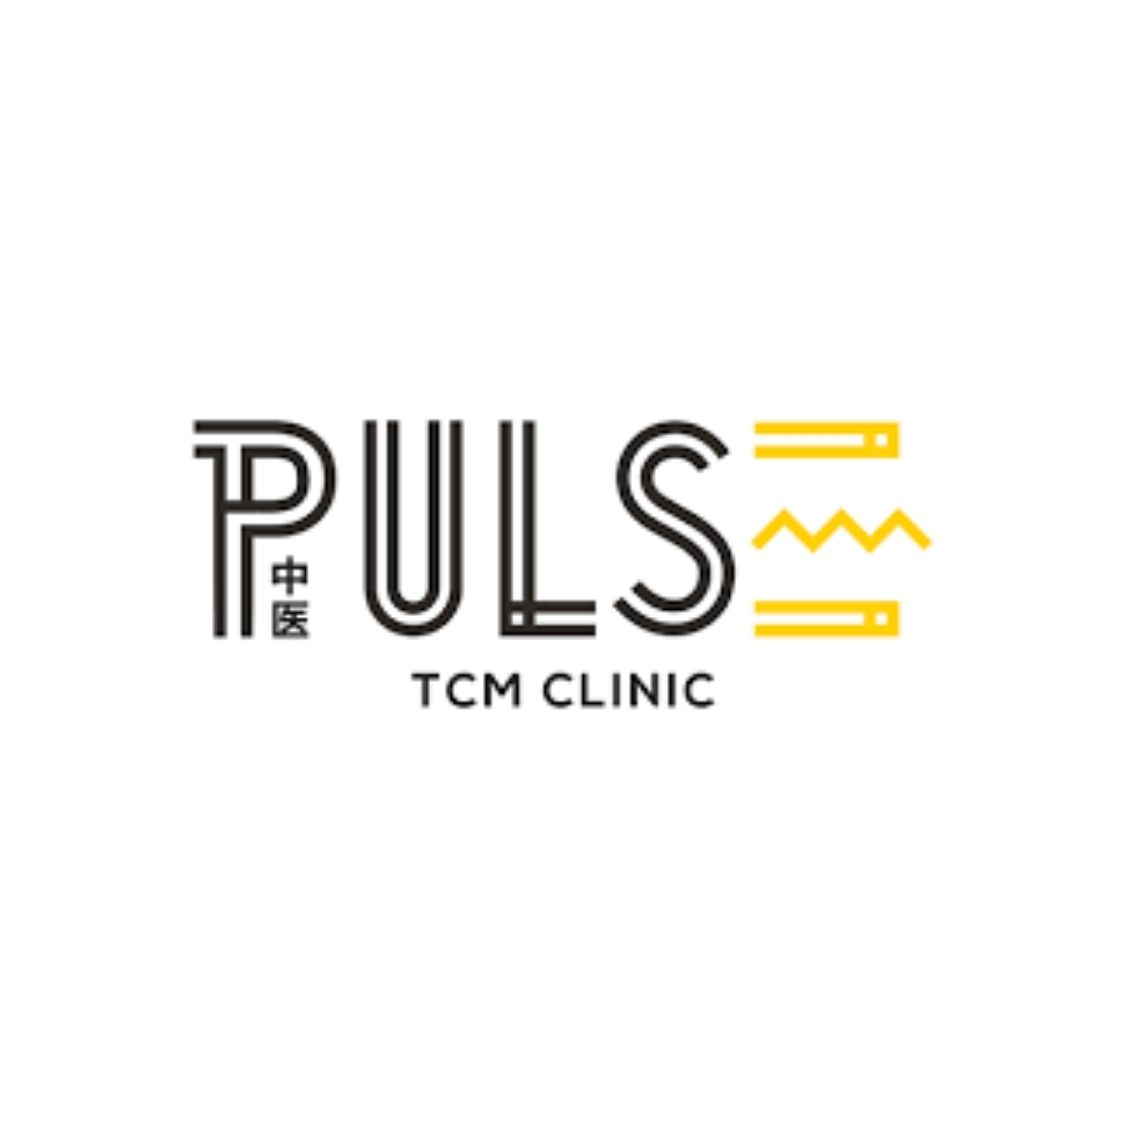 Pulse TCM logo.jpg